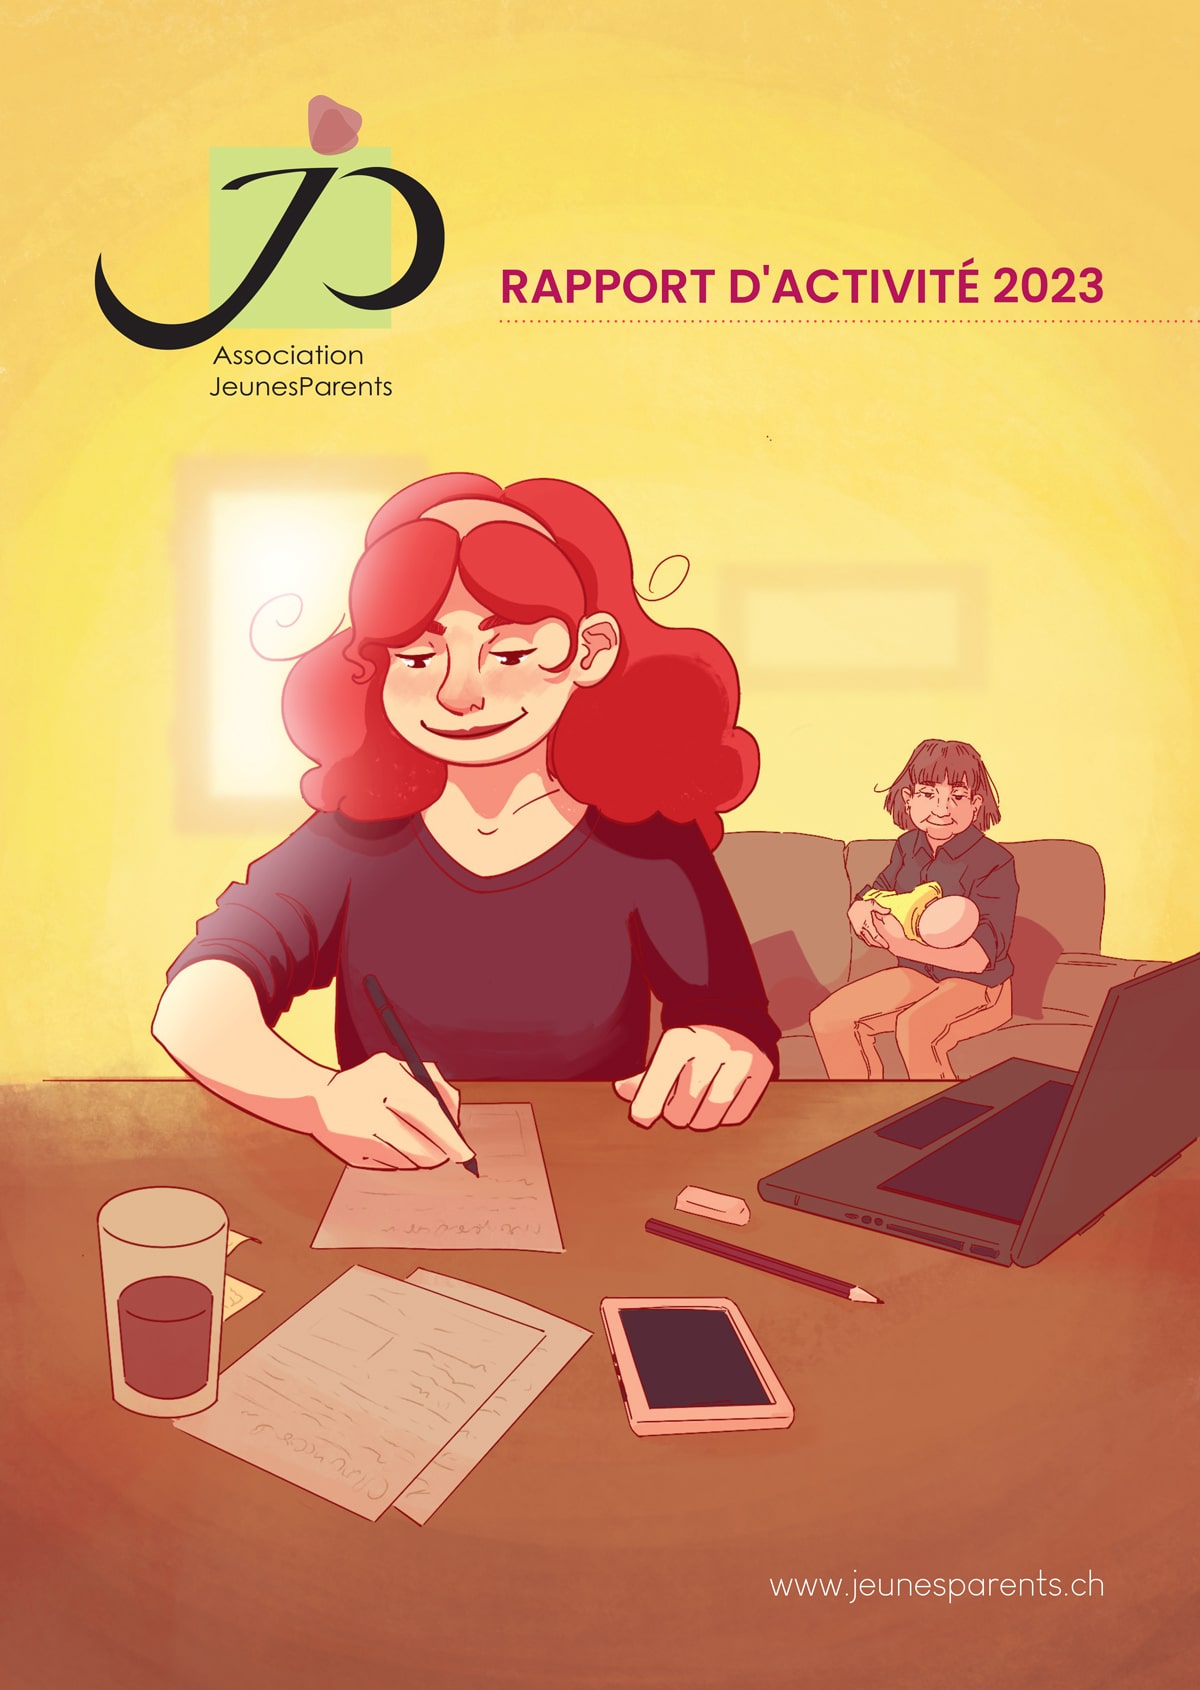 Rapport-dactivite-2023-img-min.jpg